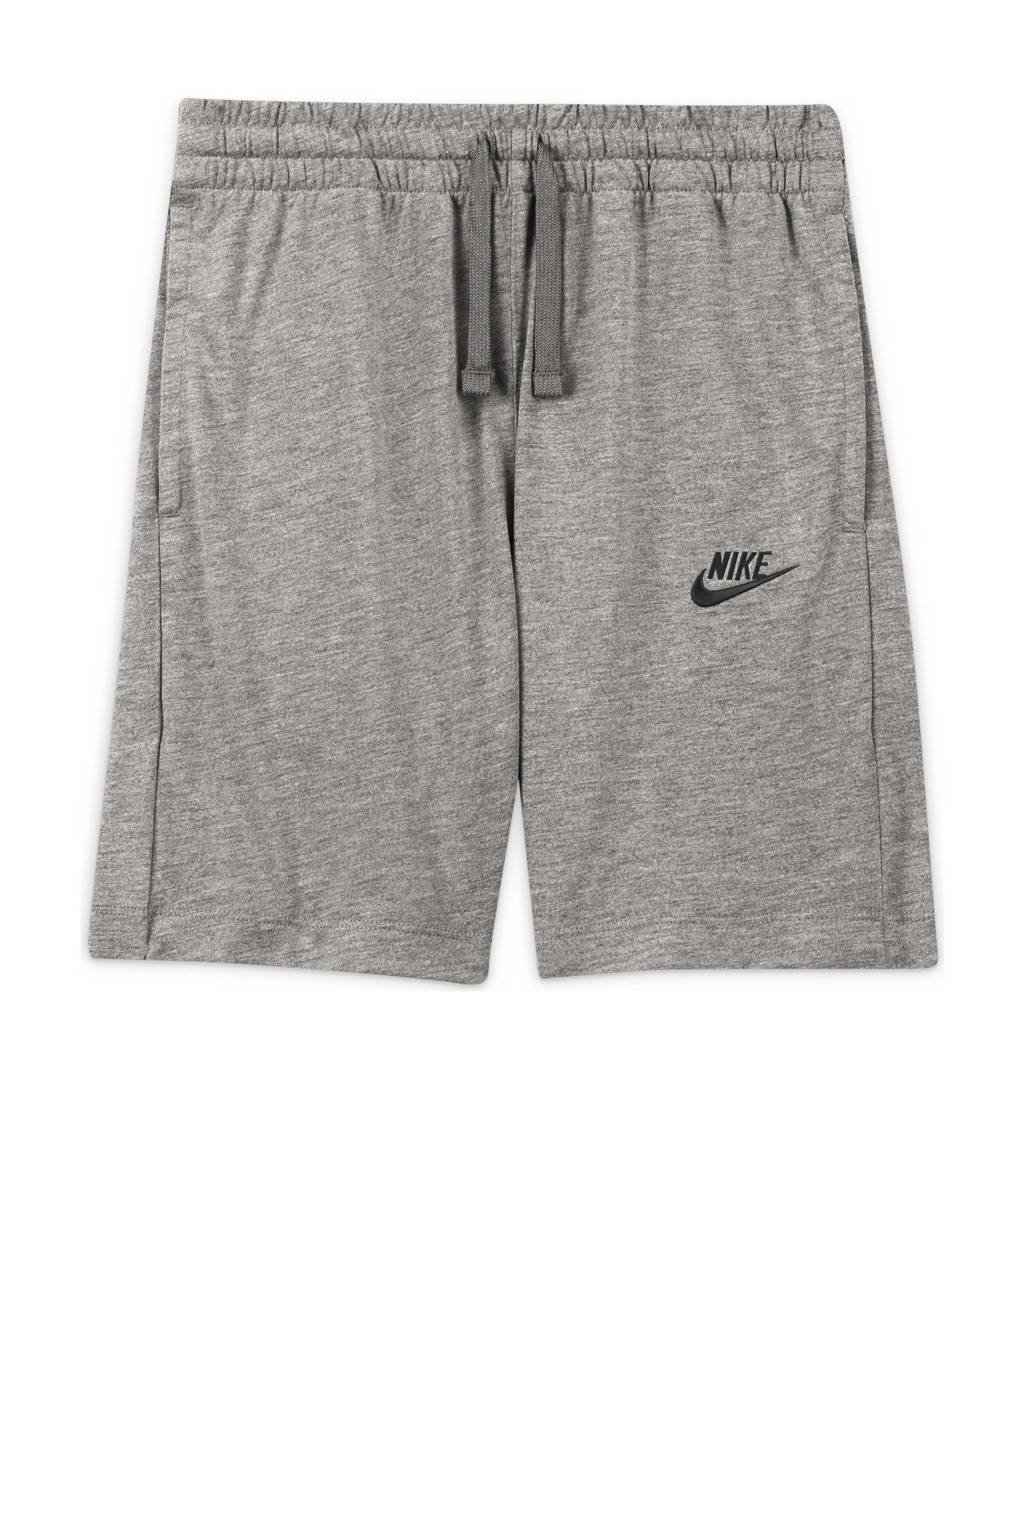 Donkergrijs en zwarte jongens Nike short van polyester met elastische tailleband met koord en logo dessin